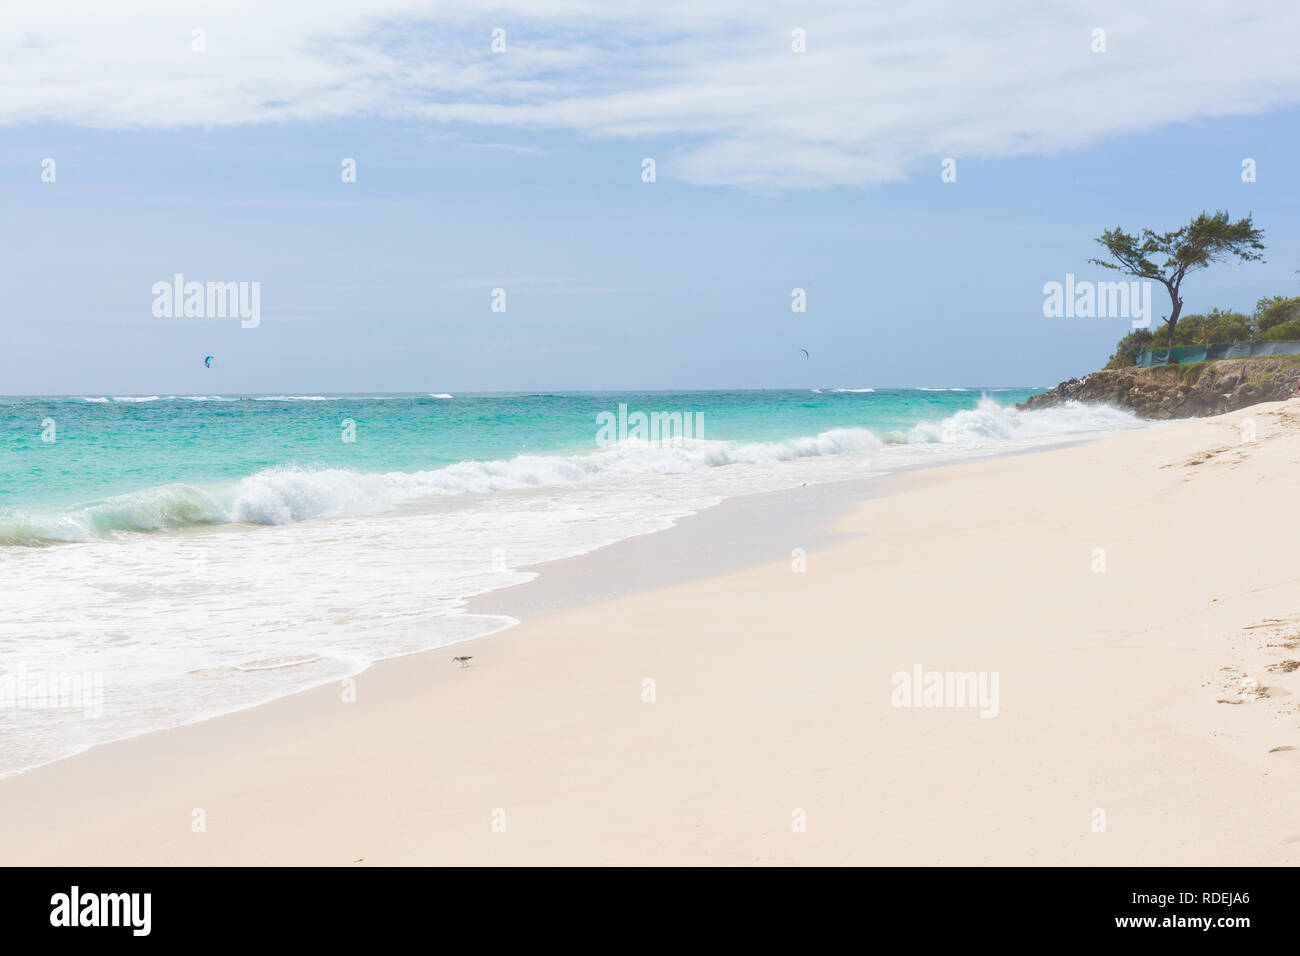 Una spiaggia di sabbia bianca a Silver Sands di Barbados. Le onde del mare in rotolo. Kitesurfisti giocare in acque sicure off-shore. Foto Stock